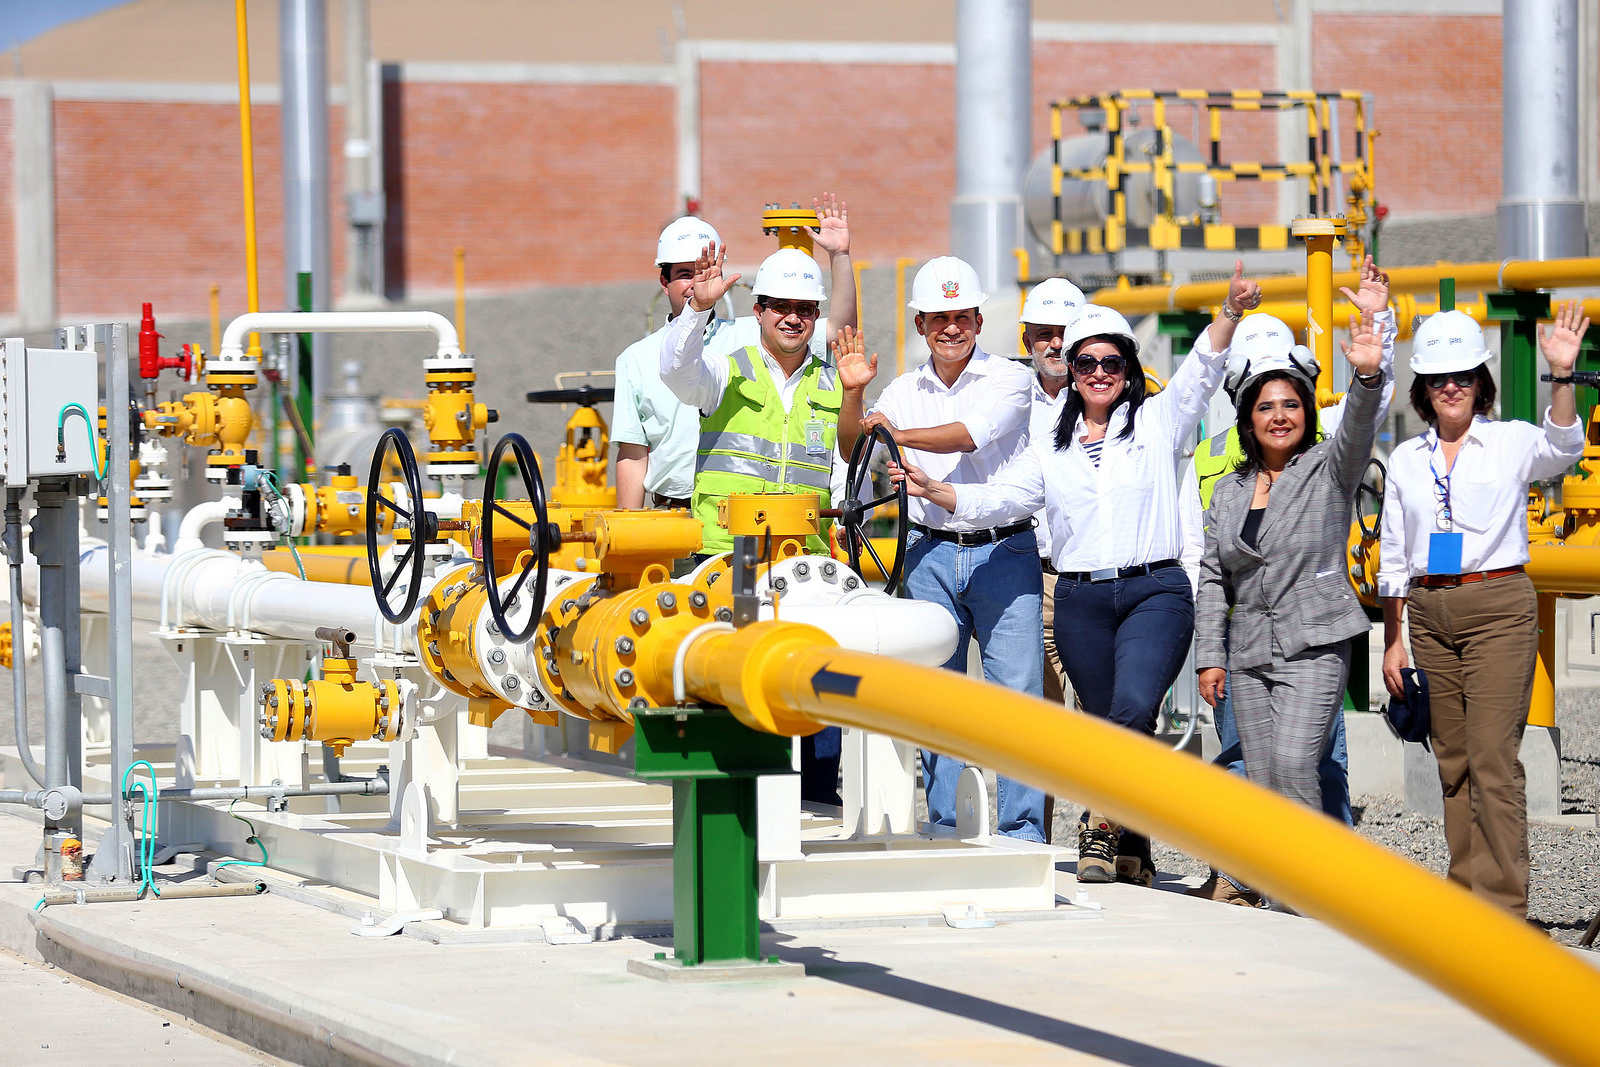 Gasoducto marca el inicio de una revolución en desarrollo económico de Ica